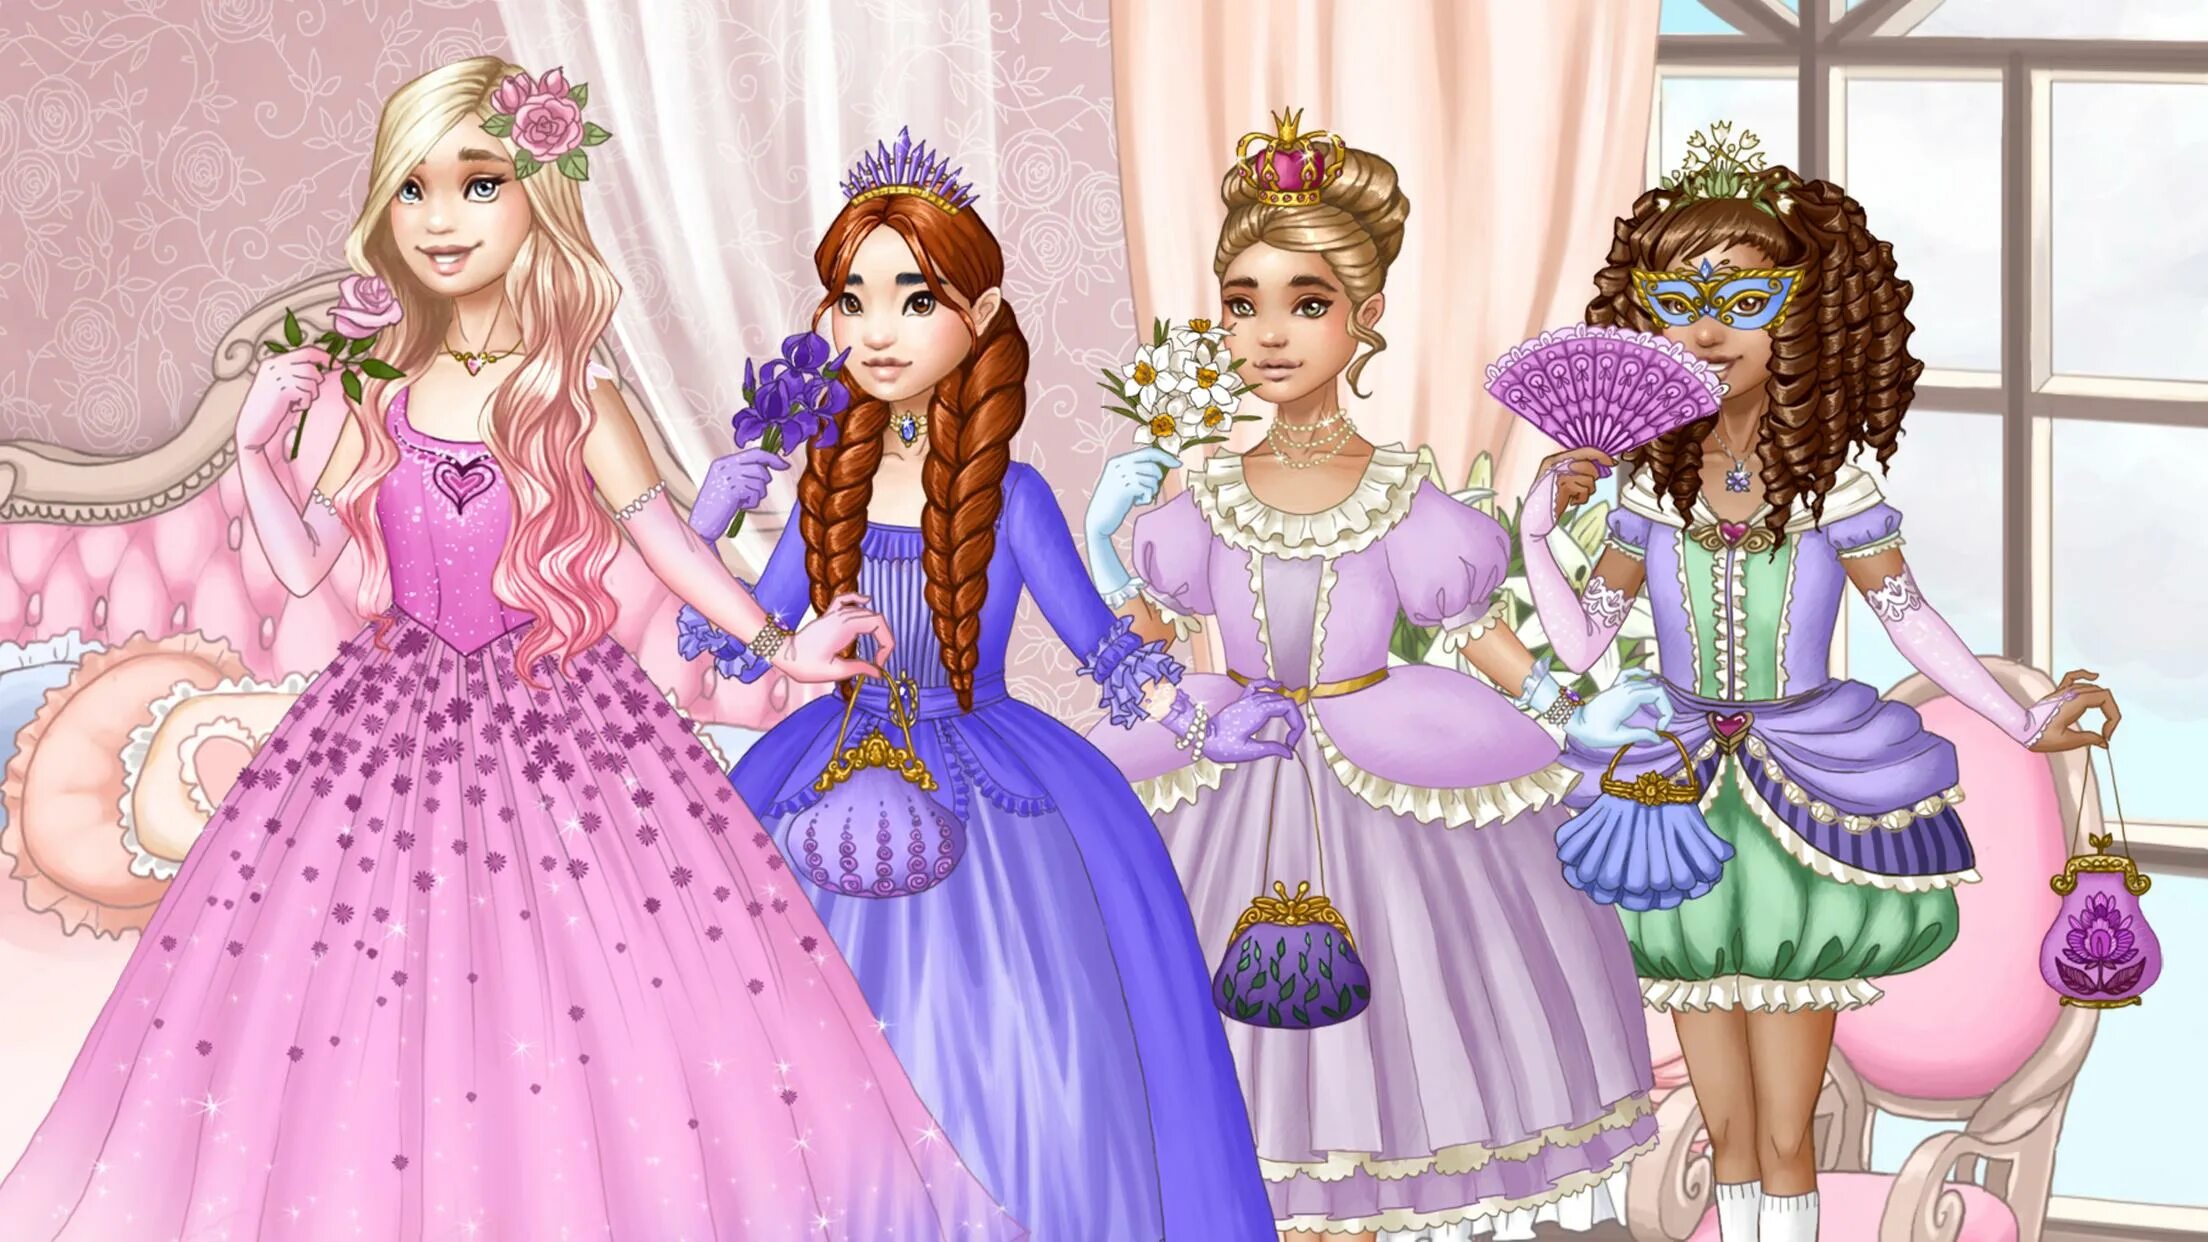 Играть принцессы одевалки. Принцессе одеважки. Принцессы одевалки. Одевалки для девочек принцессы. Игра одевалки принцесс.